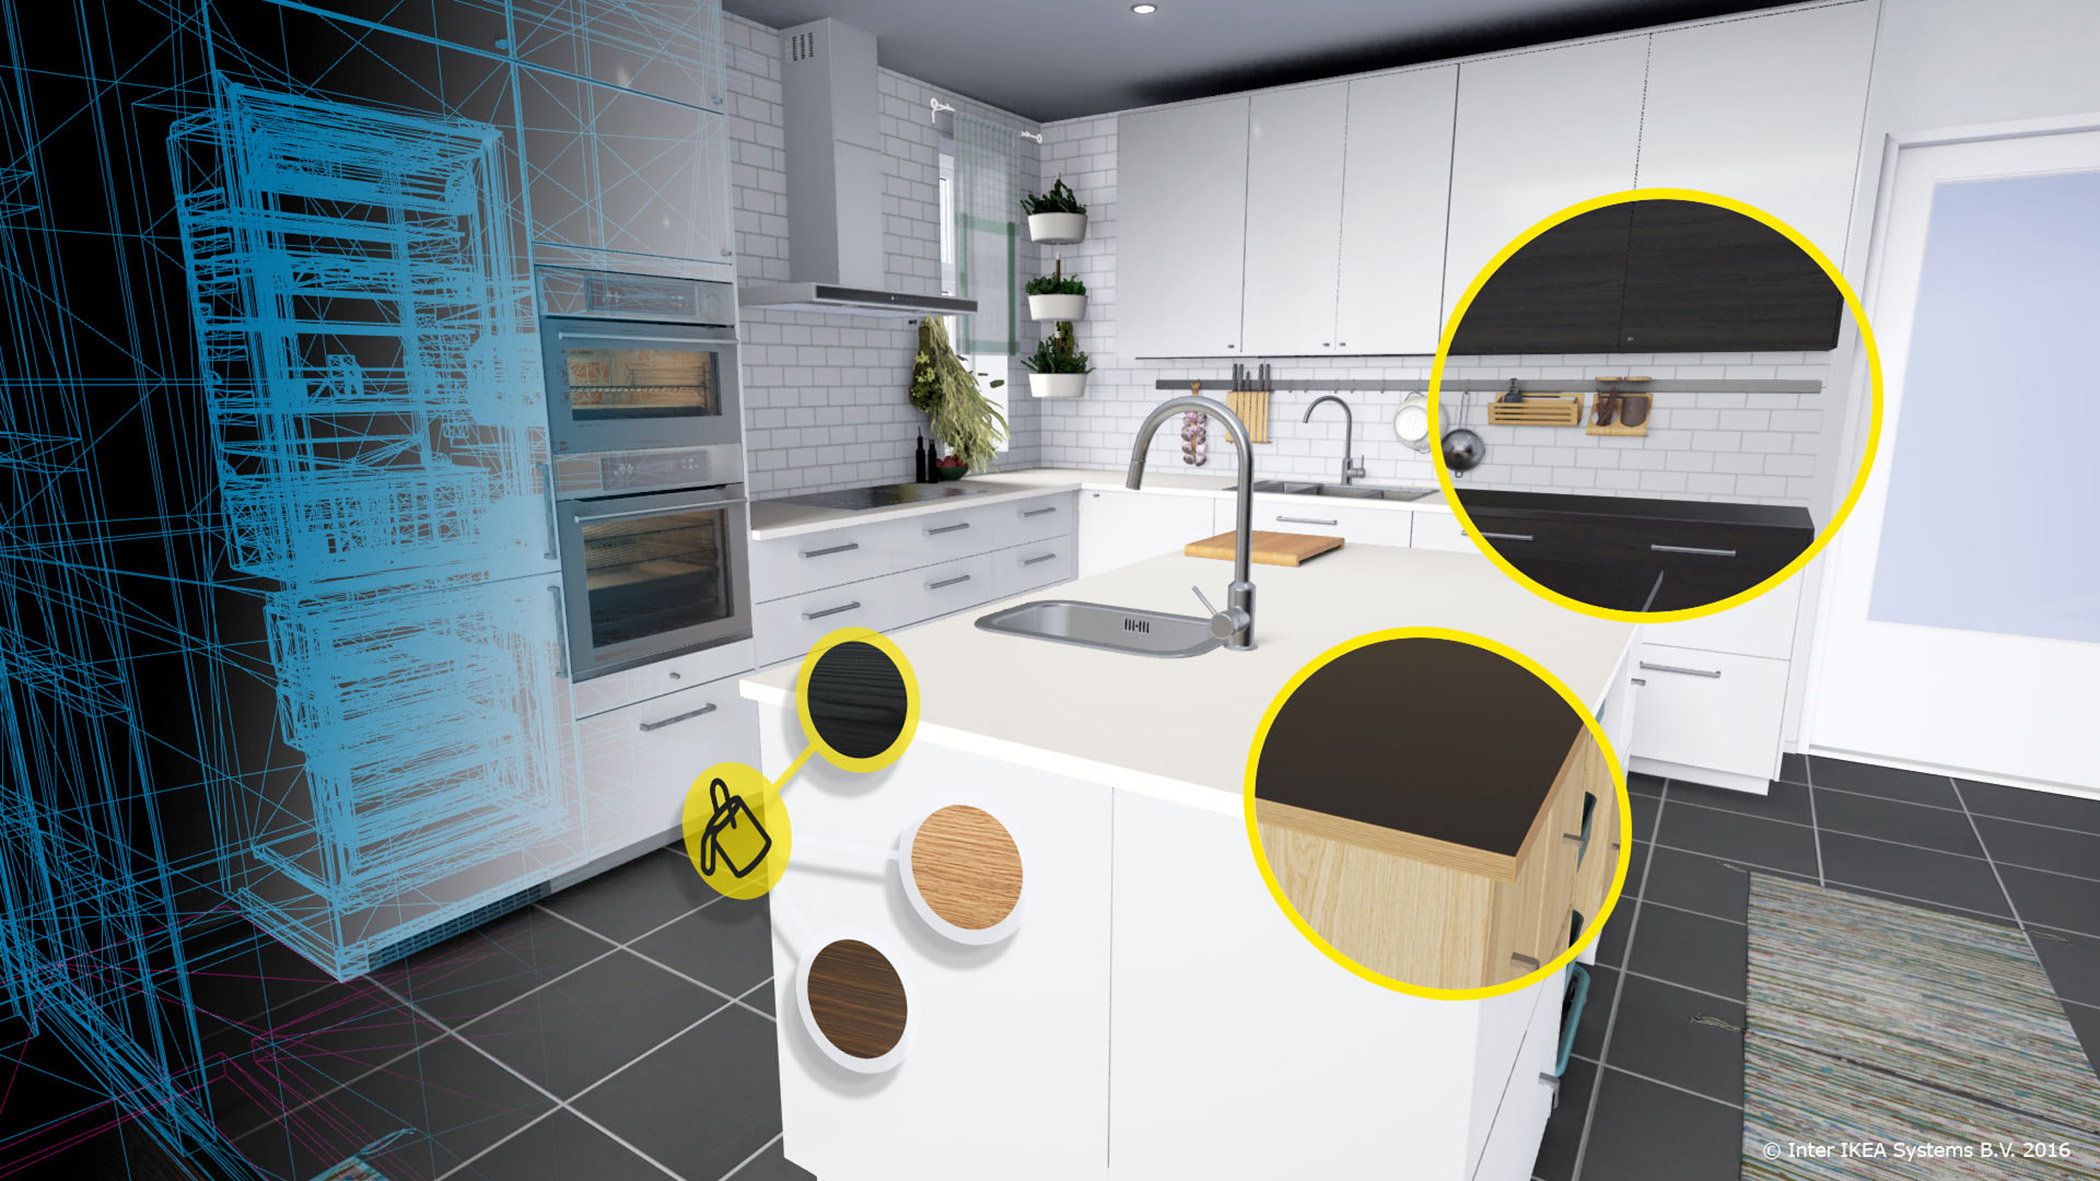 VR εφαρμογή από την Ikea, που παρουσιάζει μια εικονική κουζίνα